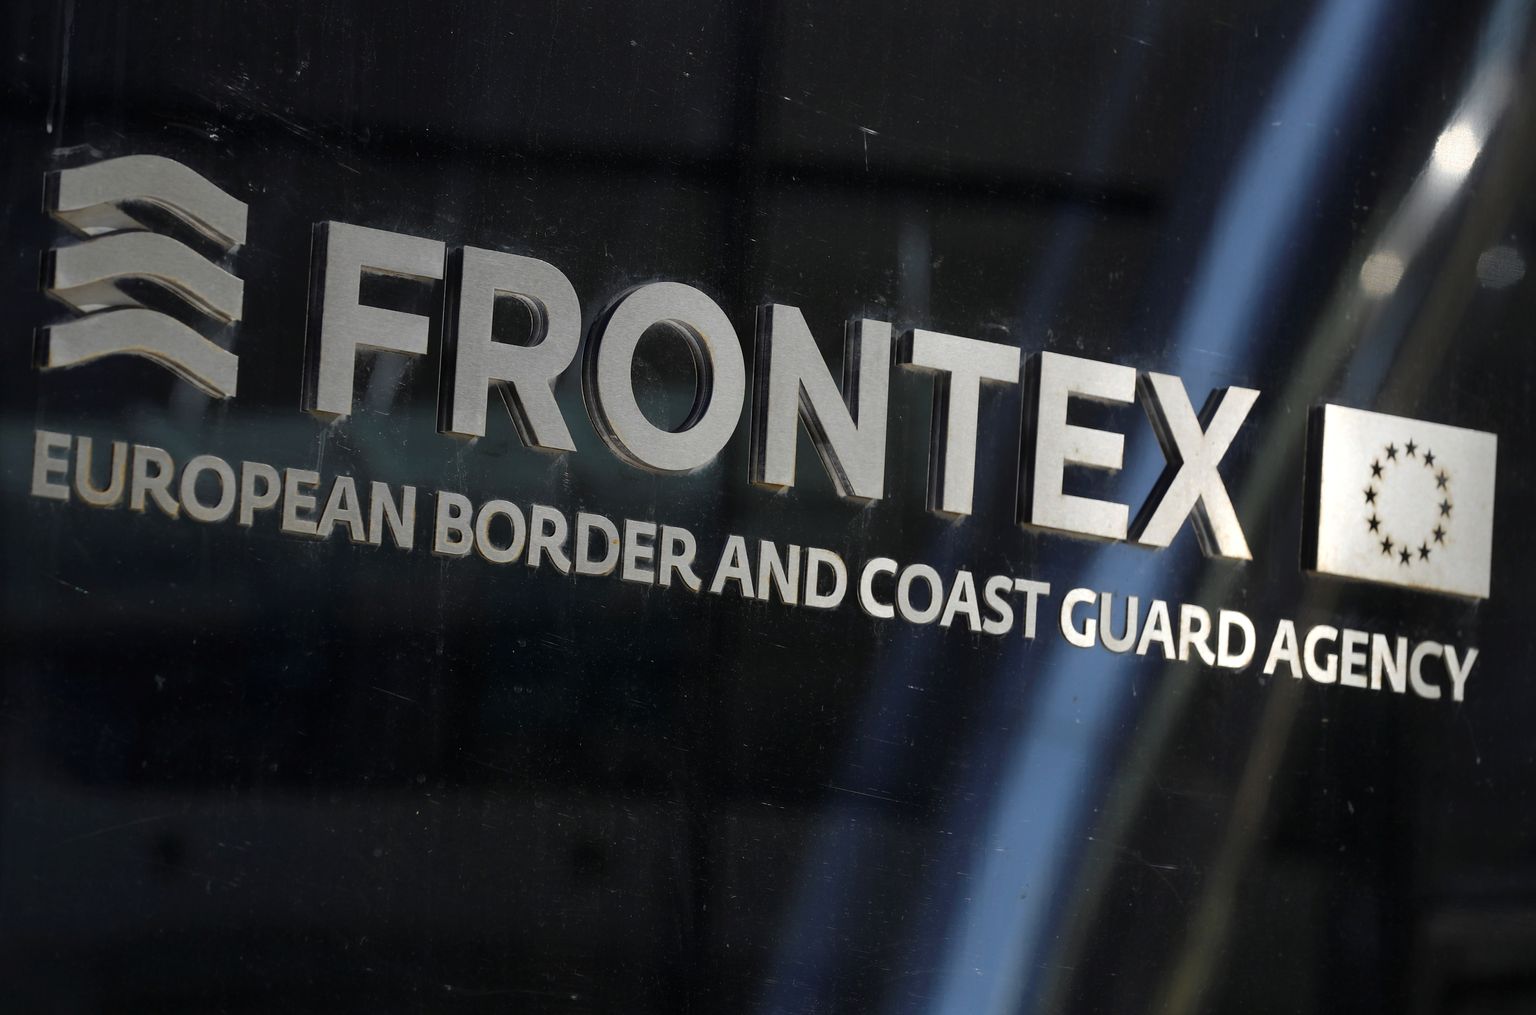 Eiropas robežu un krasta apsardzes aģentūra "Frontex".